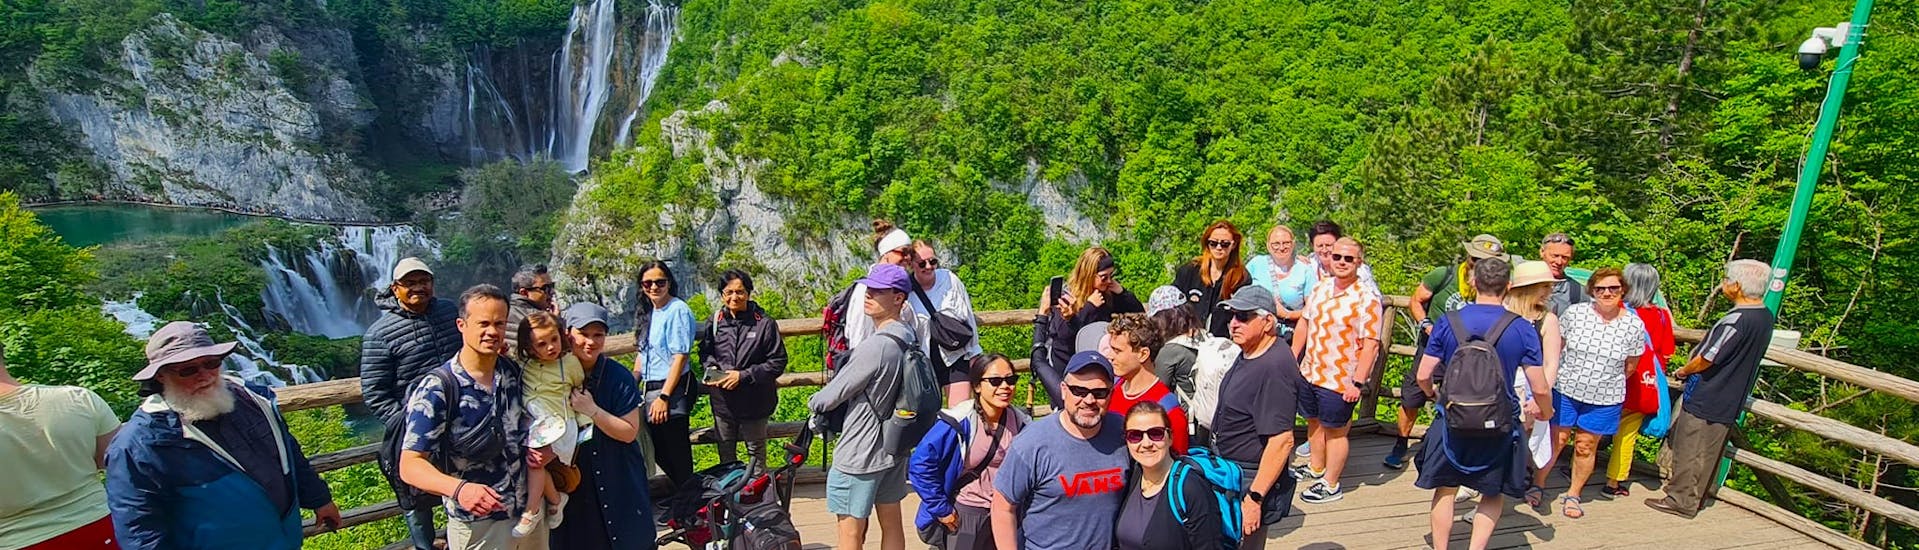 Groep mensen bezoekt het nationale park tijdens de Bus- en Boottocht naar Nationaal Park Plitvice met Jadera Booking Zadar.